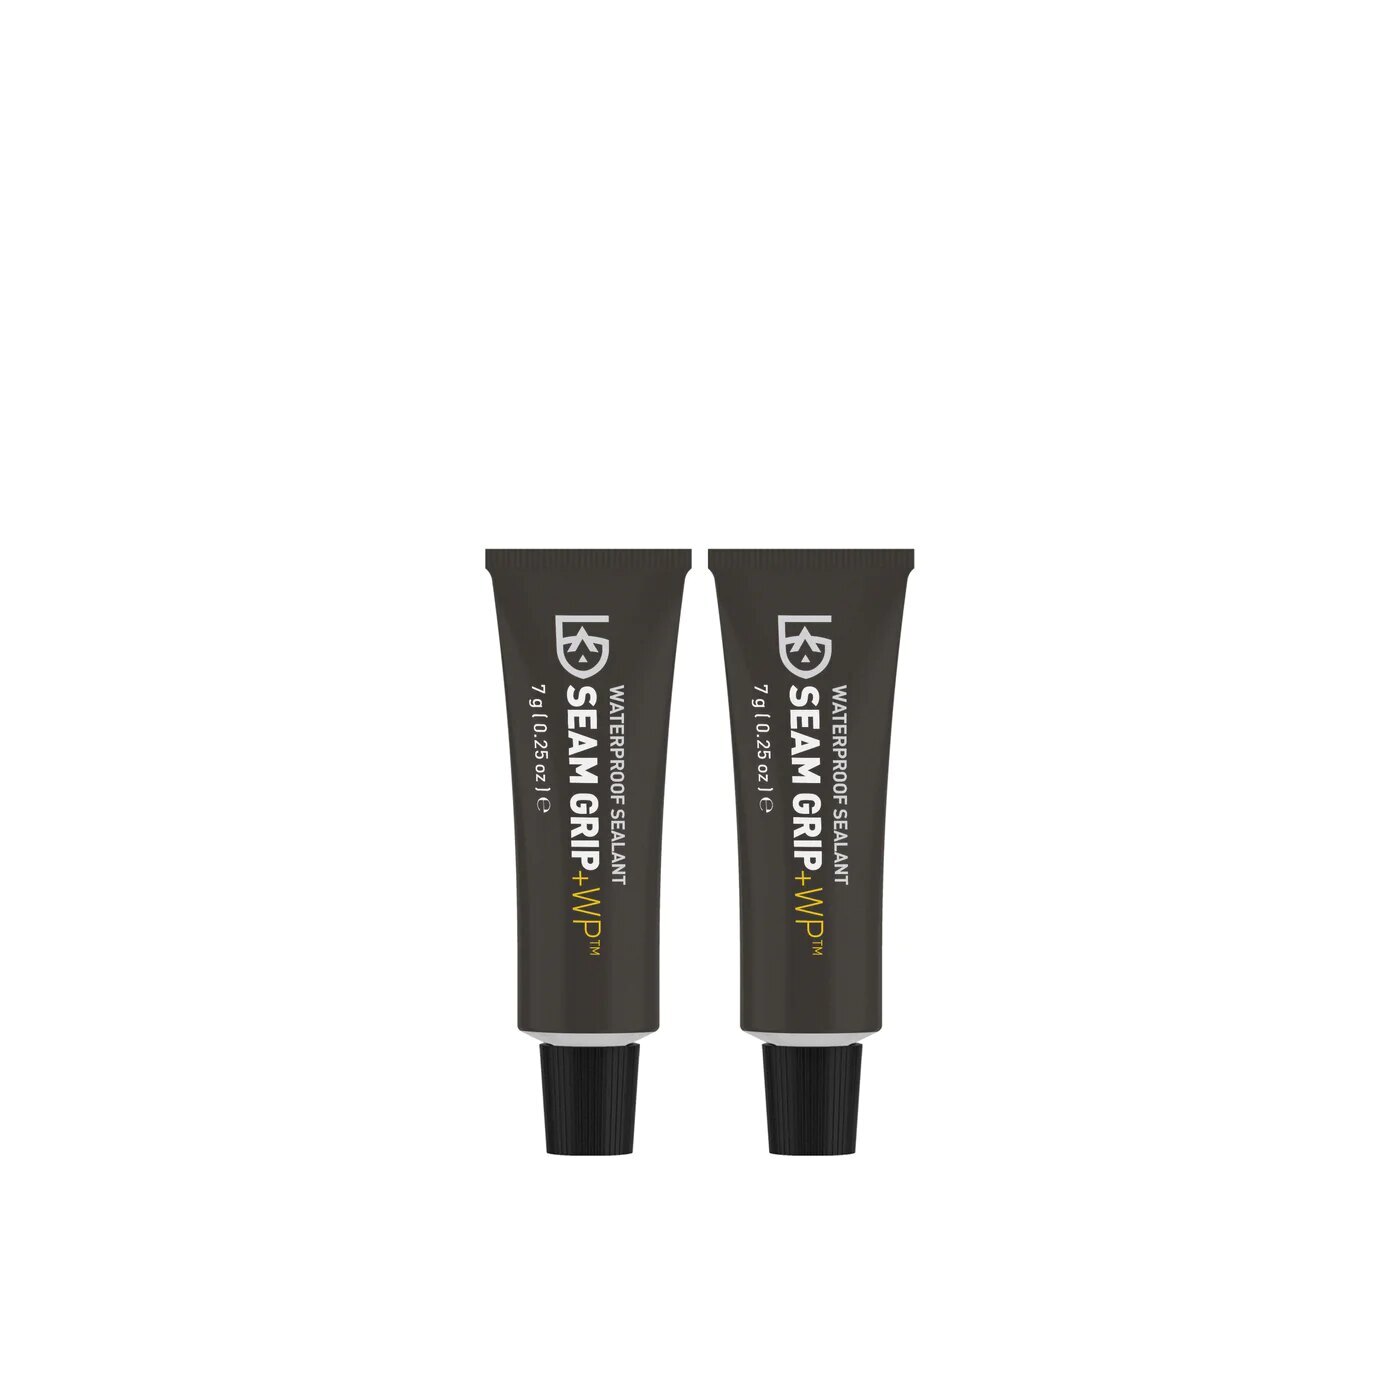 Lepidlo/tmel Seam Grip WP Gear Aid®, 2x7 g (Farba: Čierna)